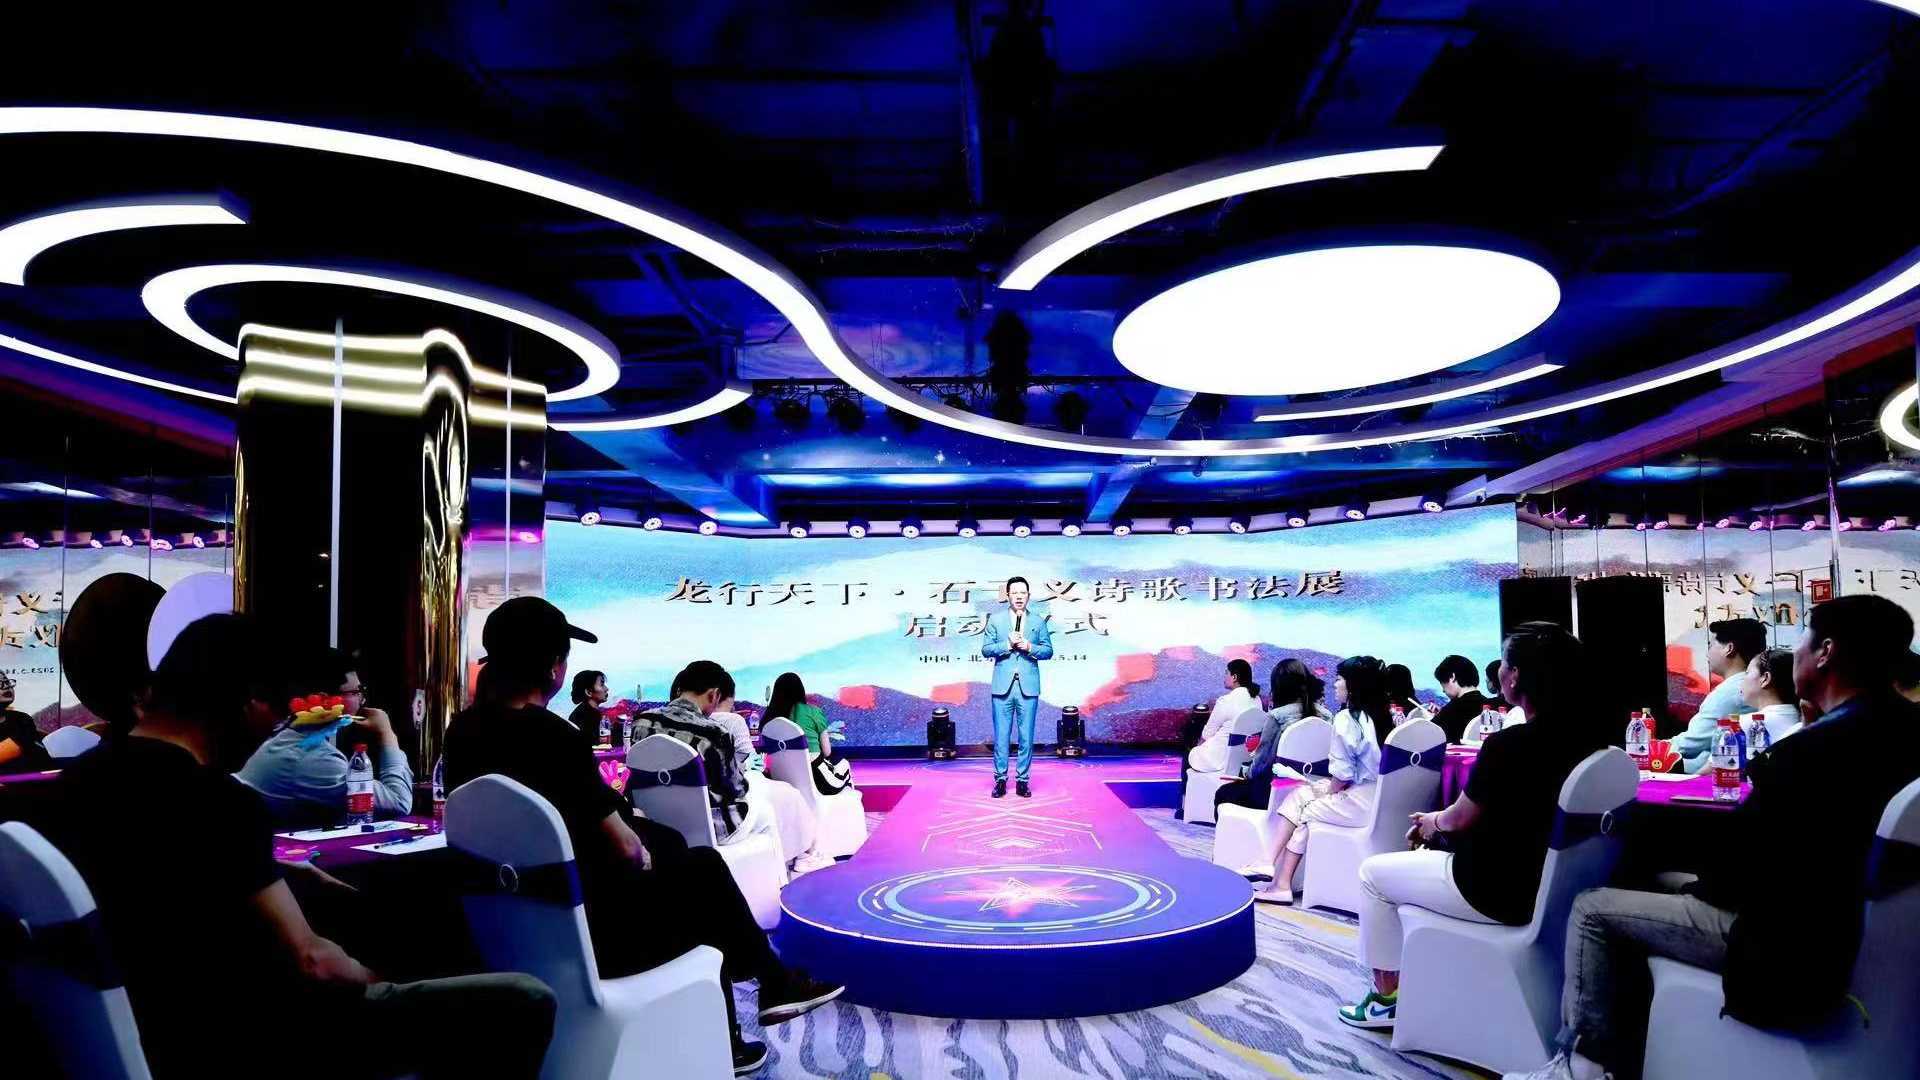 龙行天下·石子义诗歌书法展在北京隆重举行